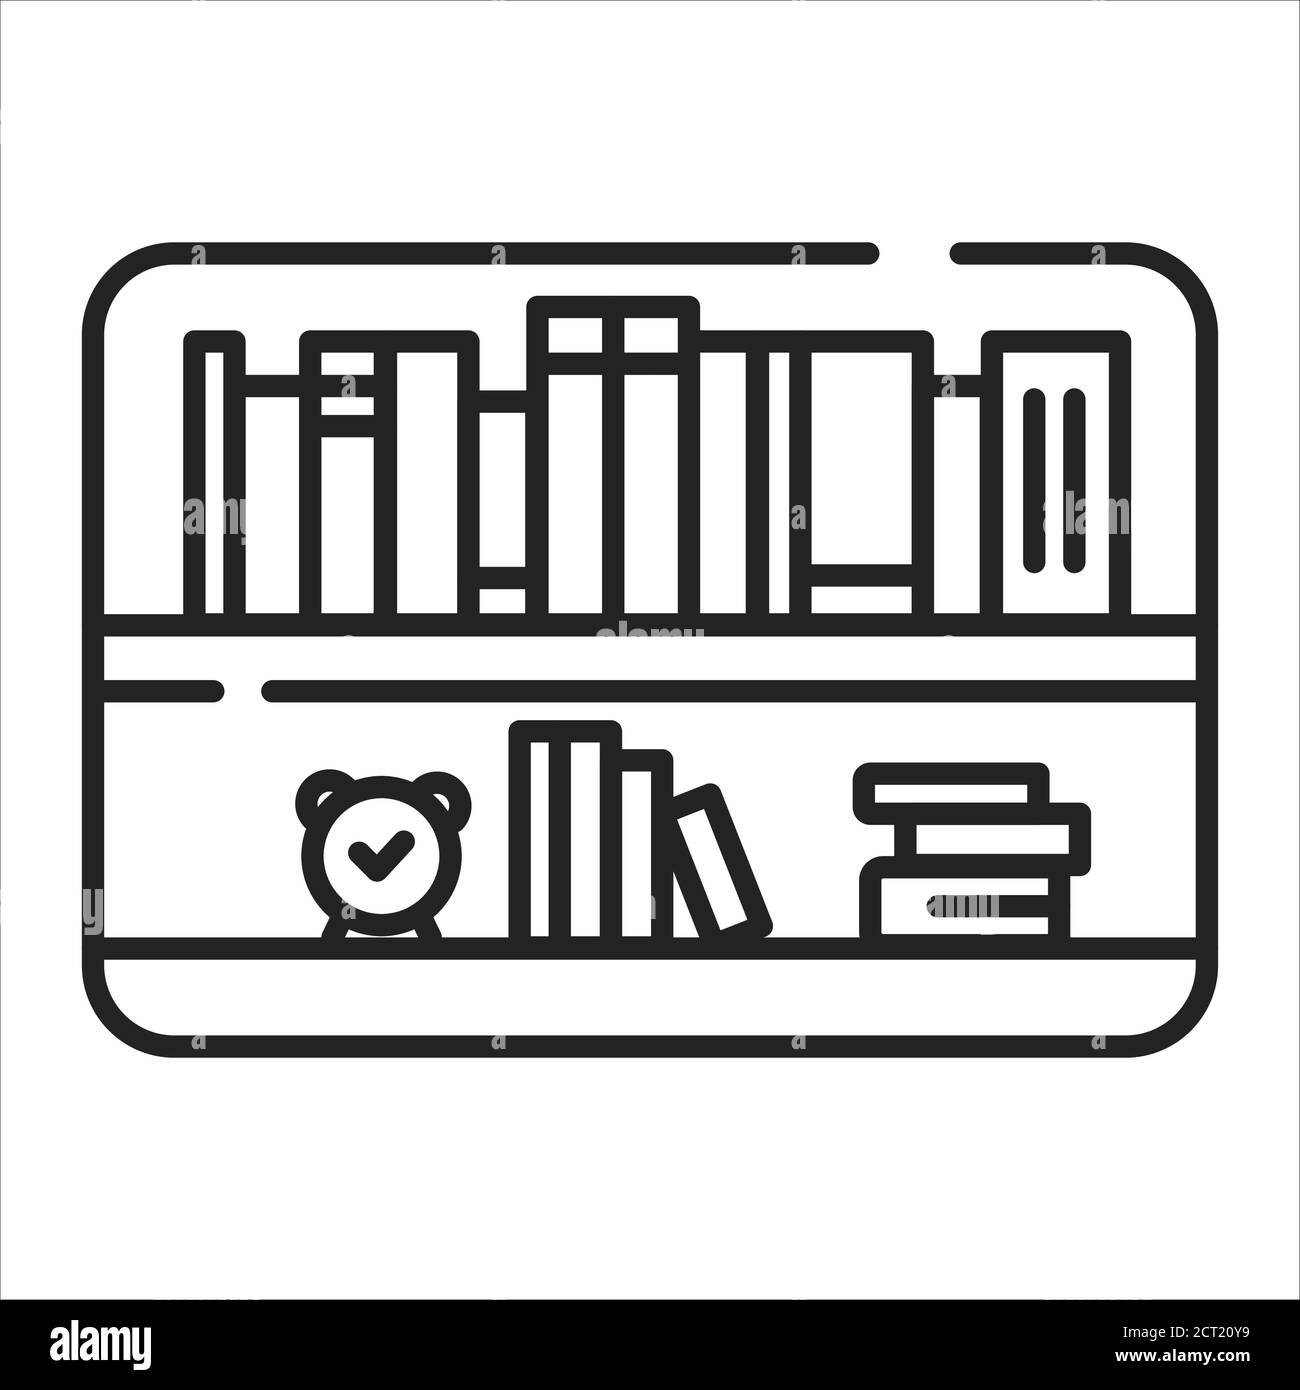 Schwarzes Symbol für Bücherregal. Möbel mit horizontalen Regalen, oft in  einem Schrank, verwendet, um Bücher oder andere gedruckte Materialien zu  speichern. Piktogramm für Web Stock-Vektorgrafik - Alamy